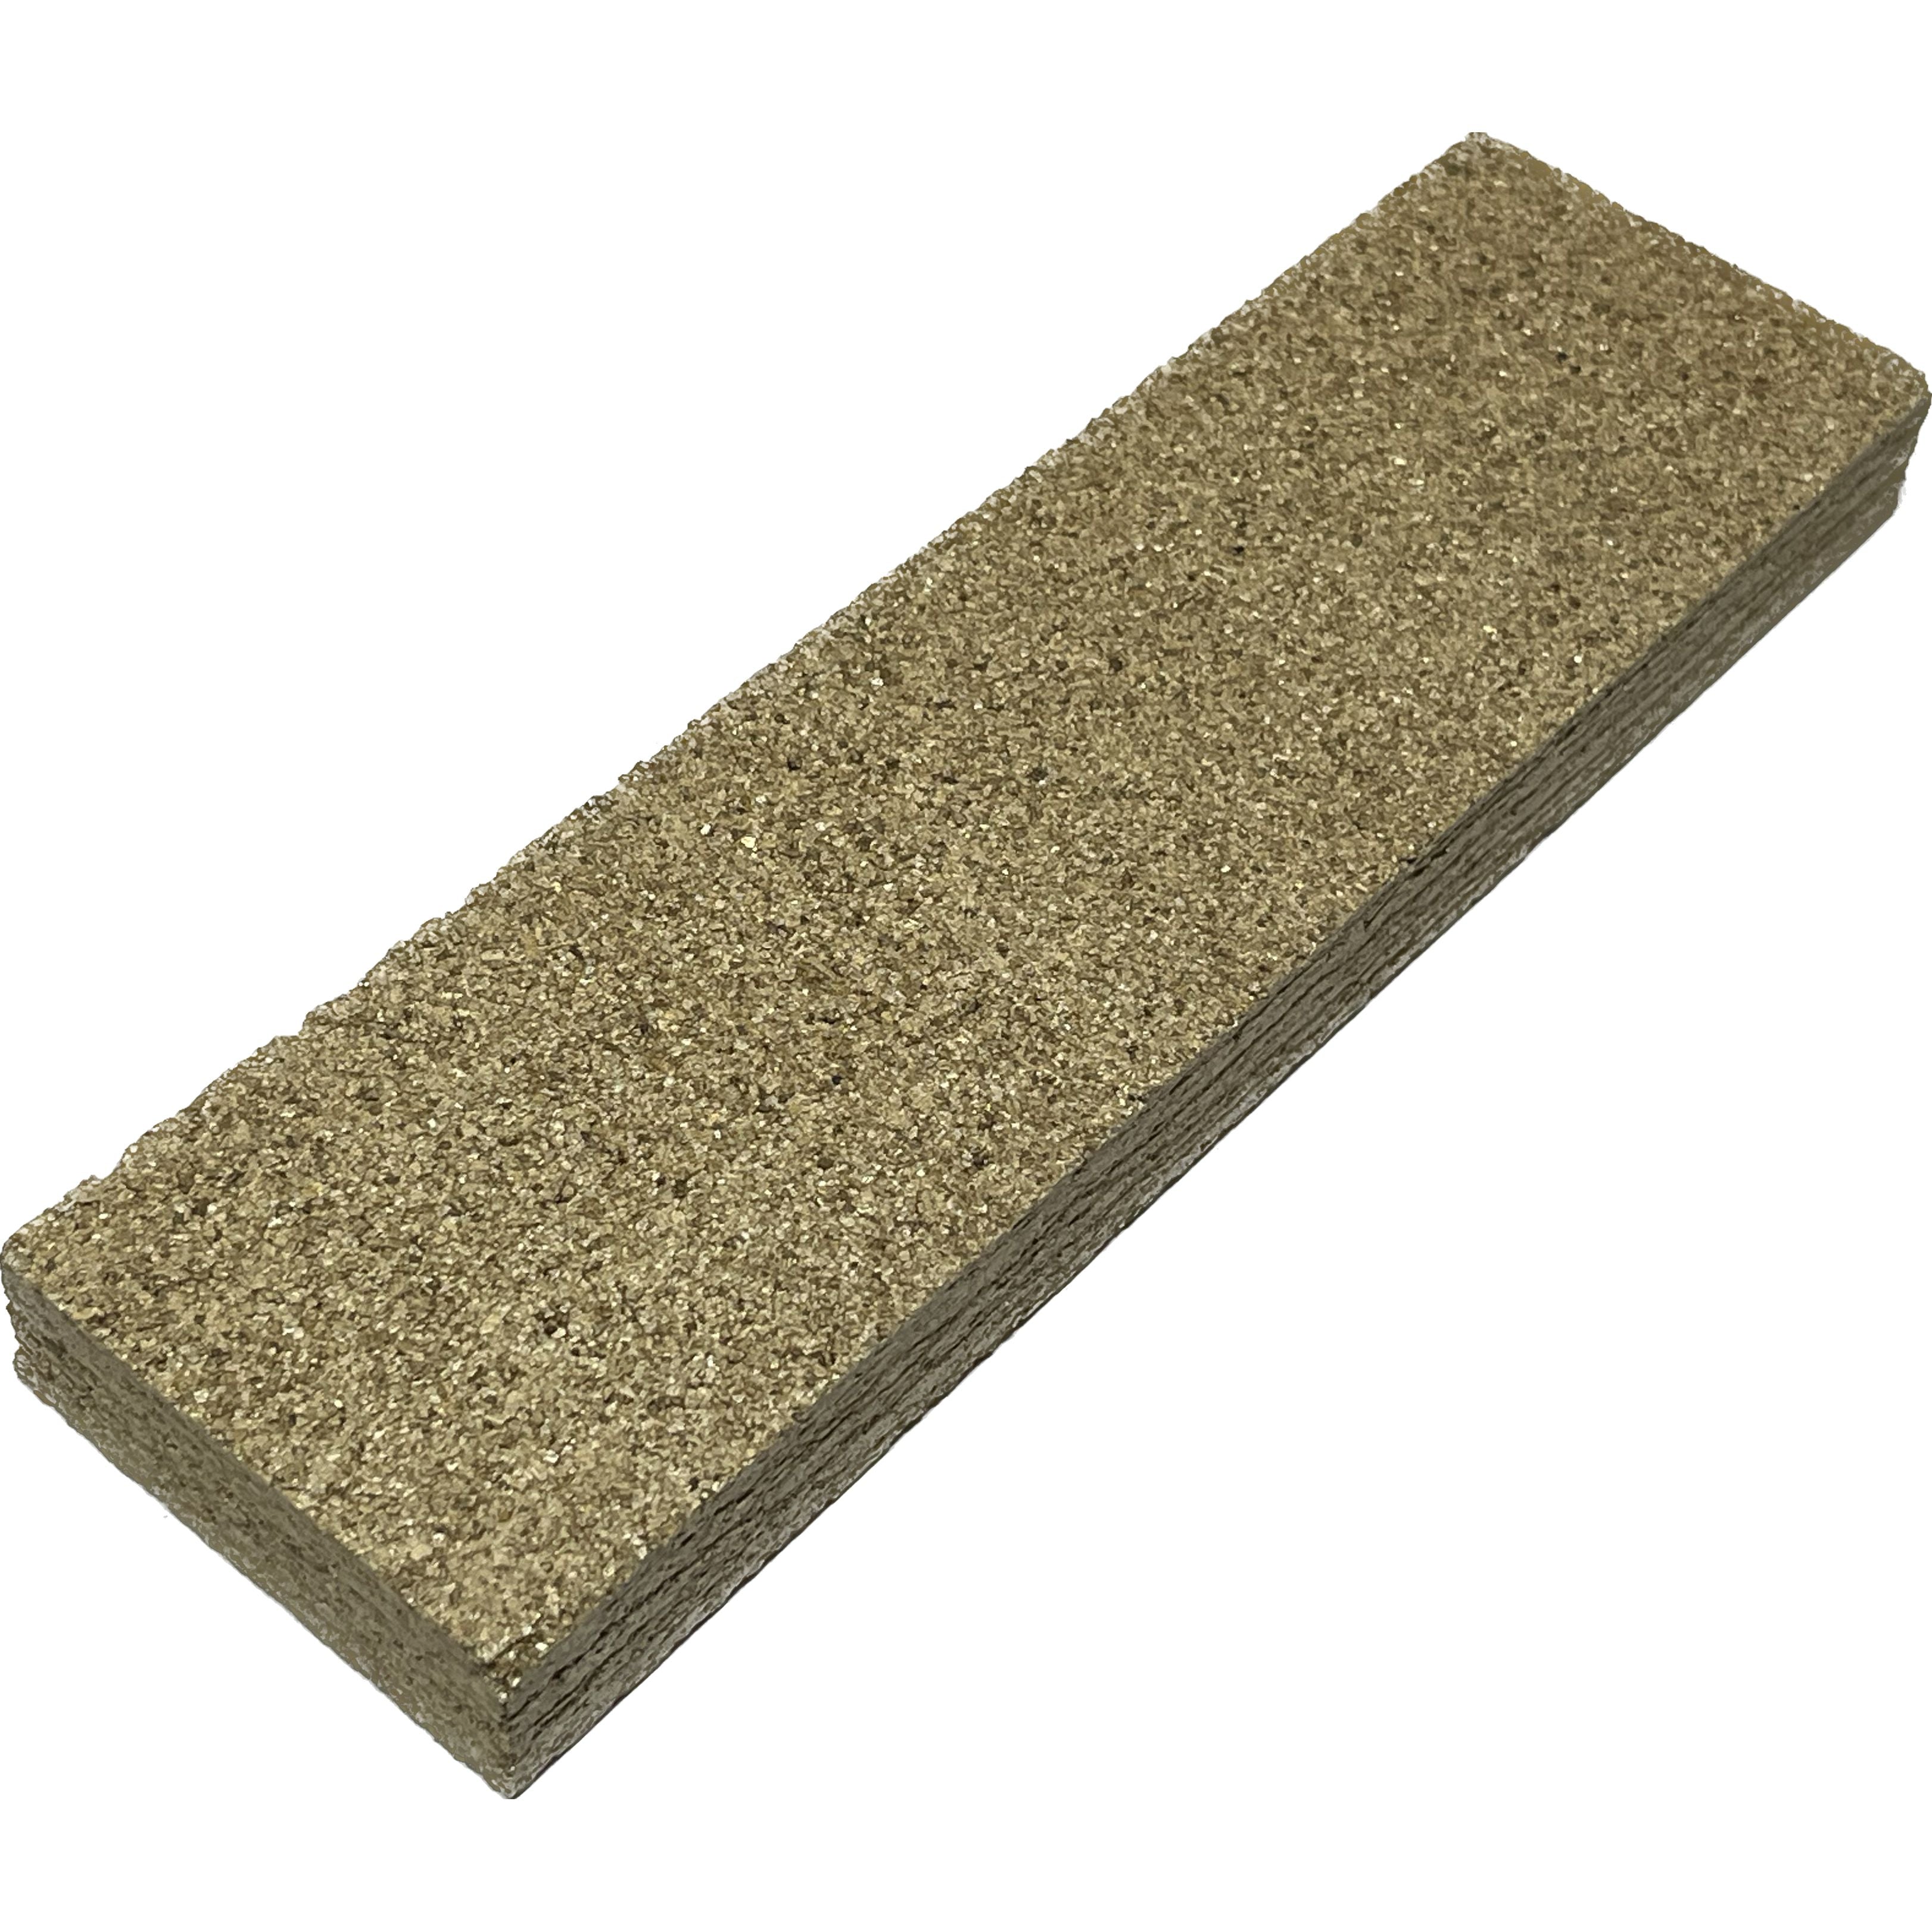 Fire Brick Vermiculite Board